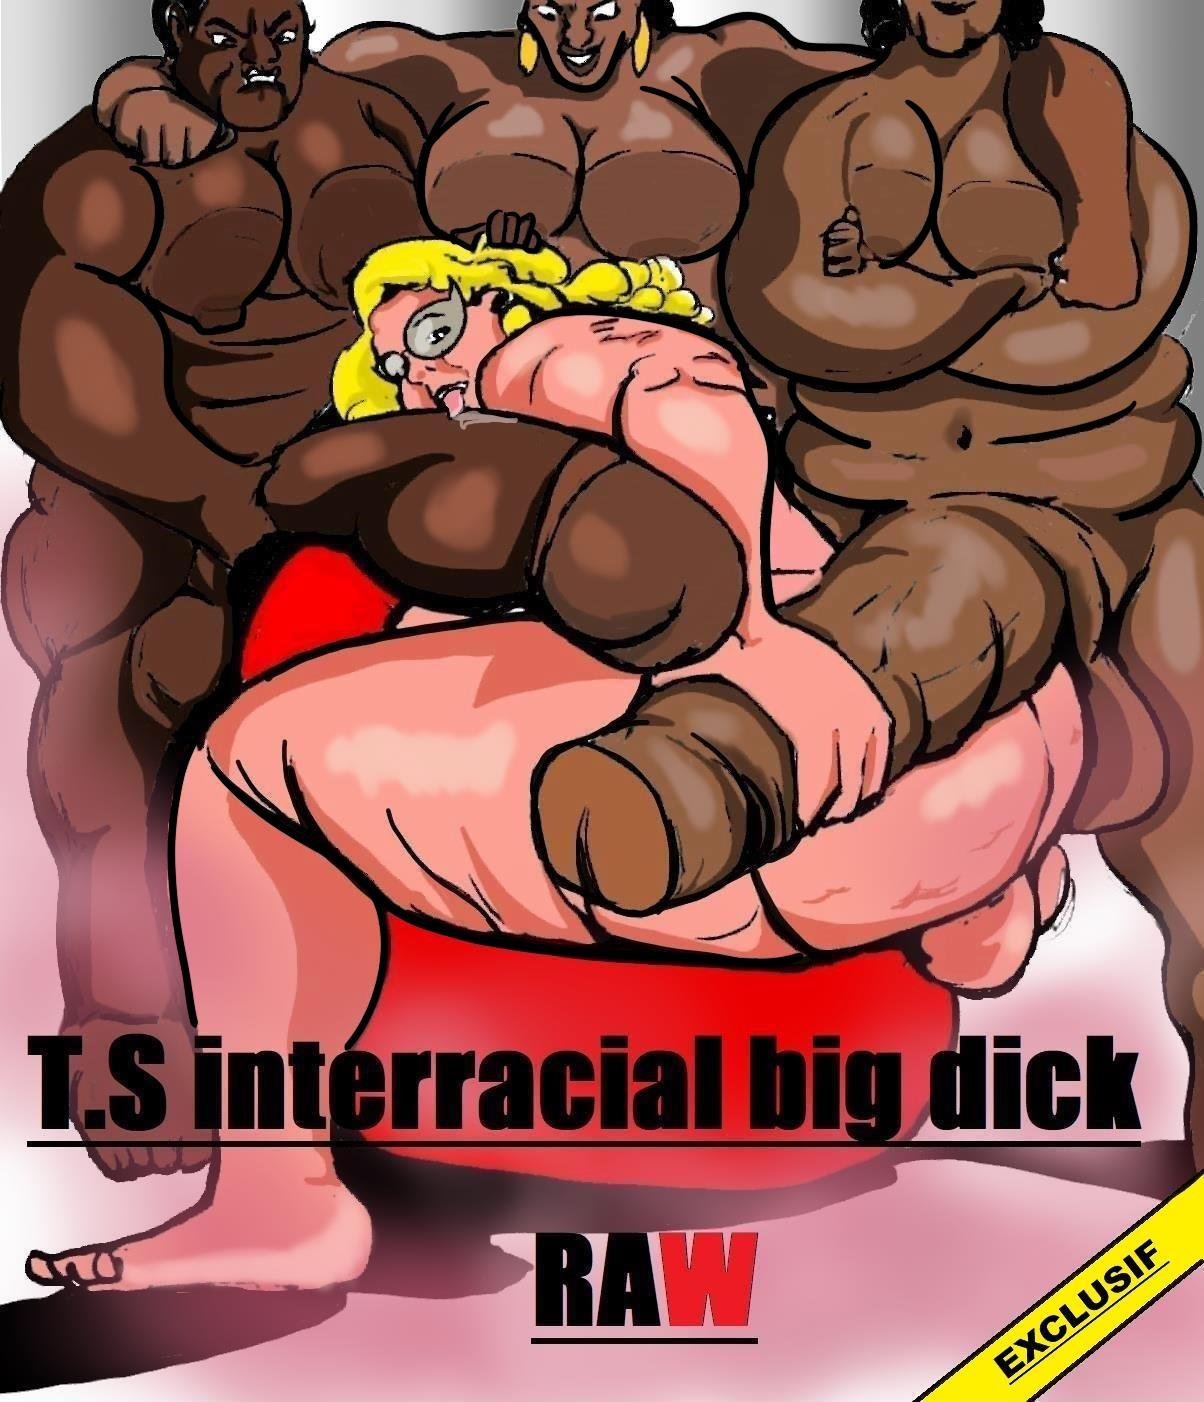 Dominant Ladyboy Big Cock - T.S Interracial big dick RAW Â» Porn comics free online